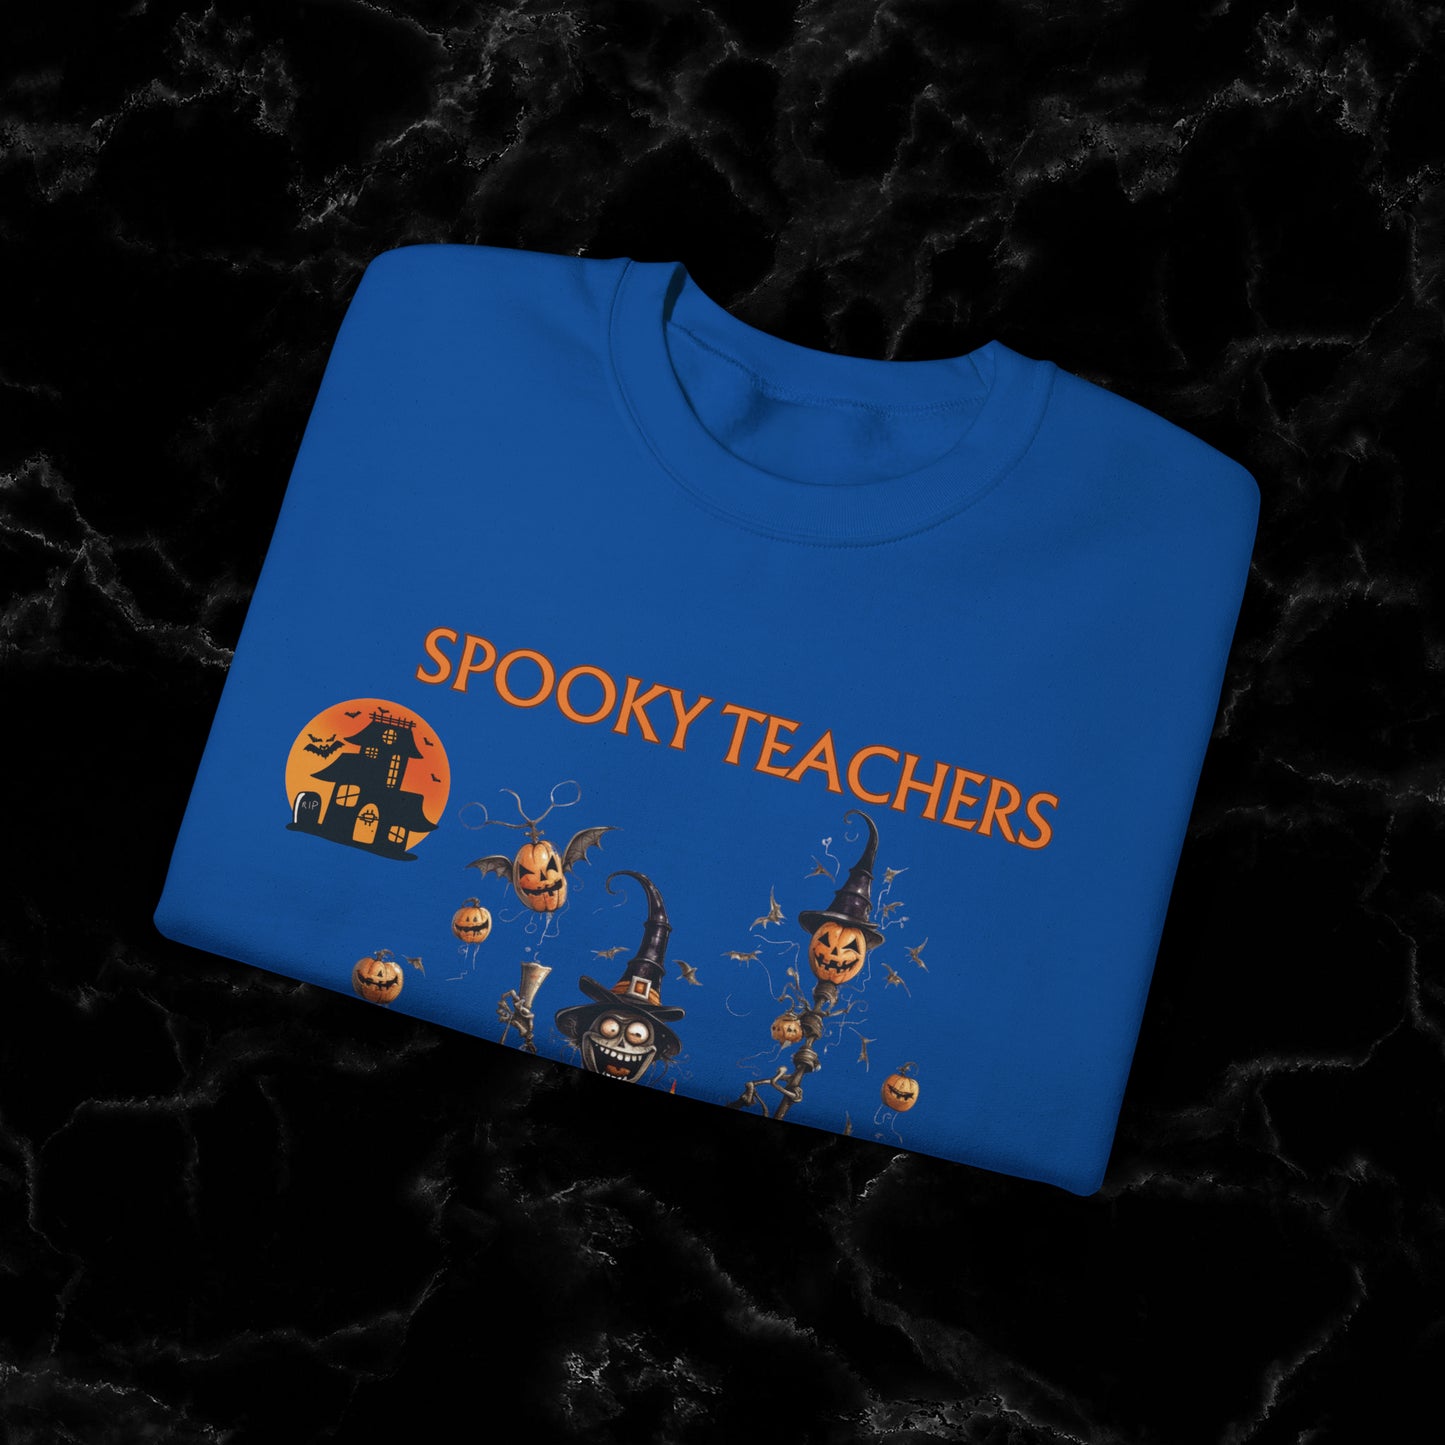 Spooky Teachers Sweatshirt - Embrace Feral Halloween Fun with this Halloween Spooky Sweatshirt for a Hauntingly Stylish Look Sweatshirt   